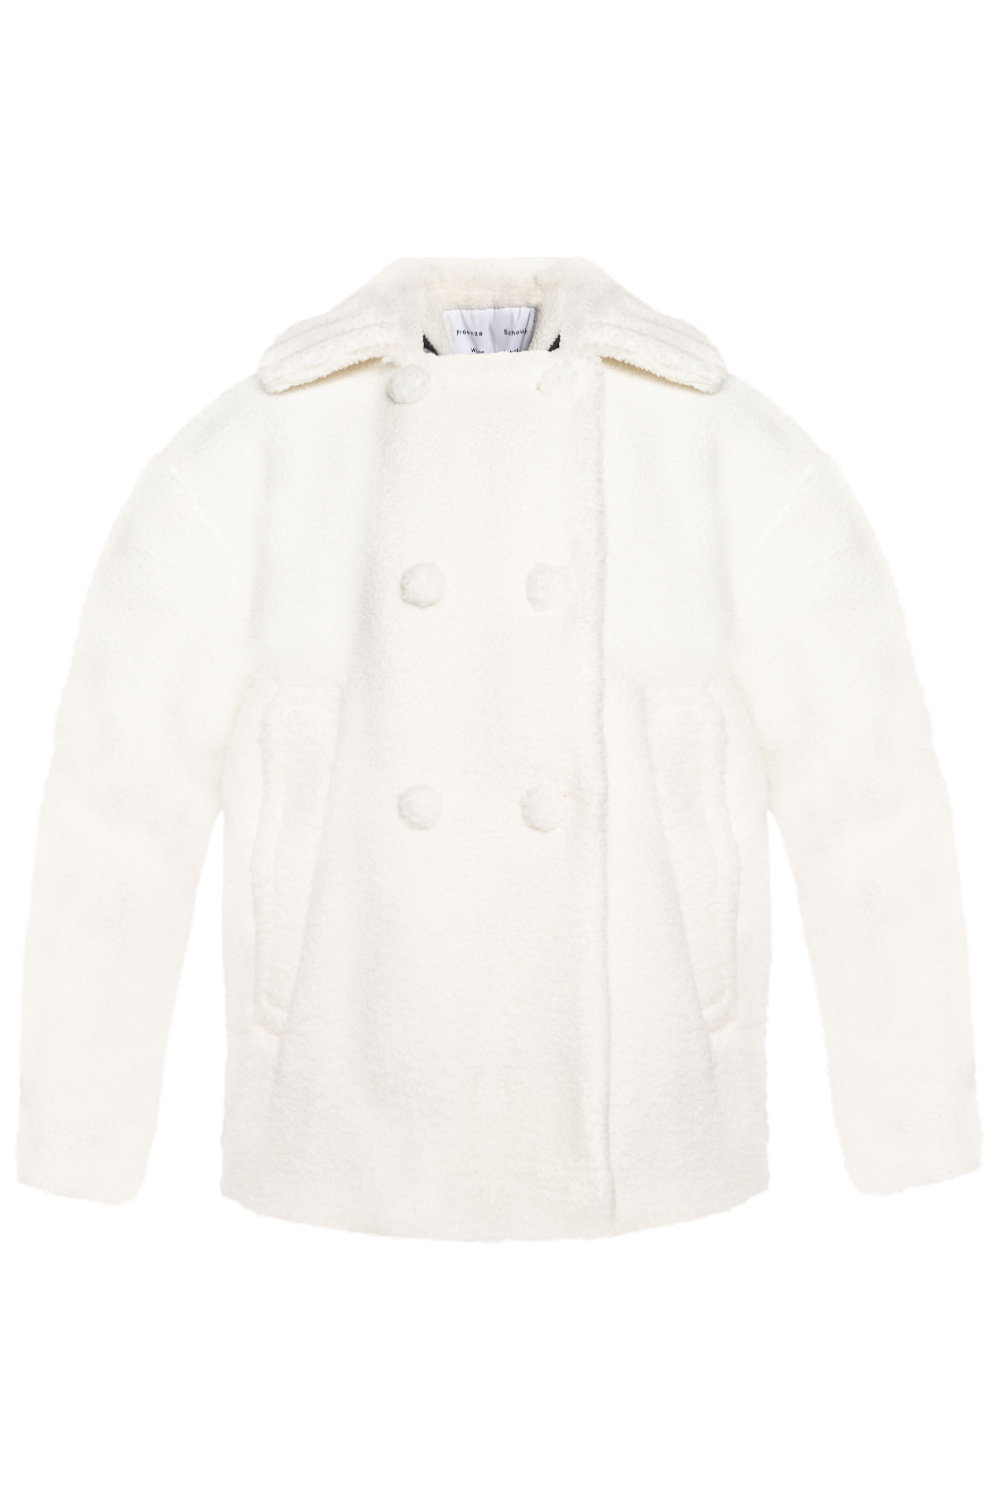 PROENZA SCHOULER BUTY ZA KOSTKĘ TYPU CHELSEA Fur coat